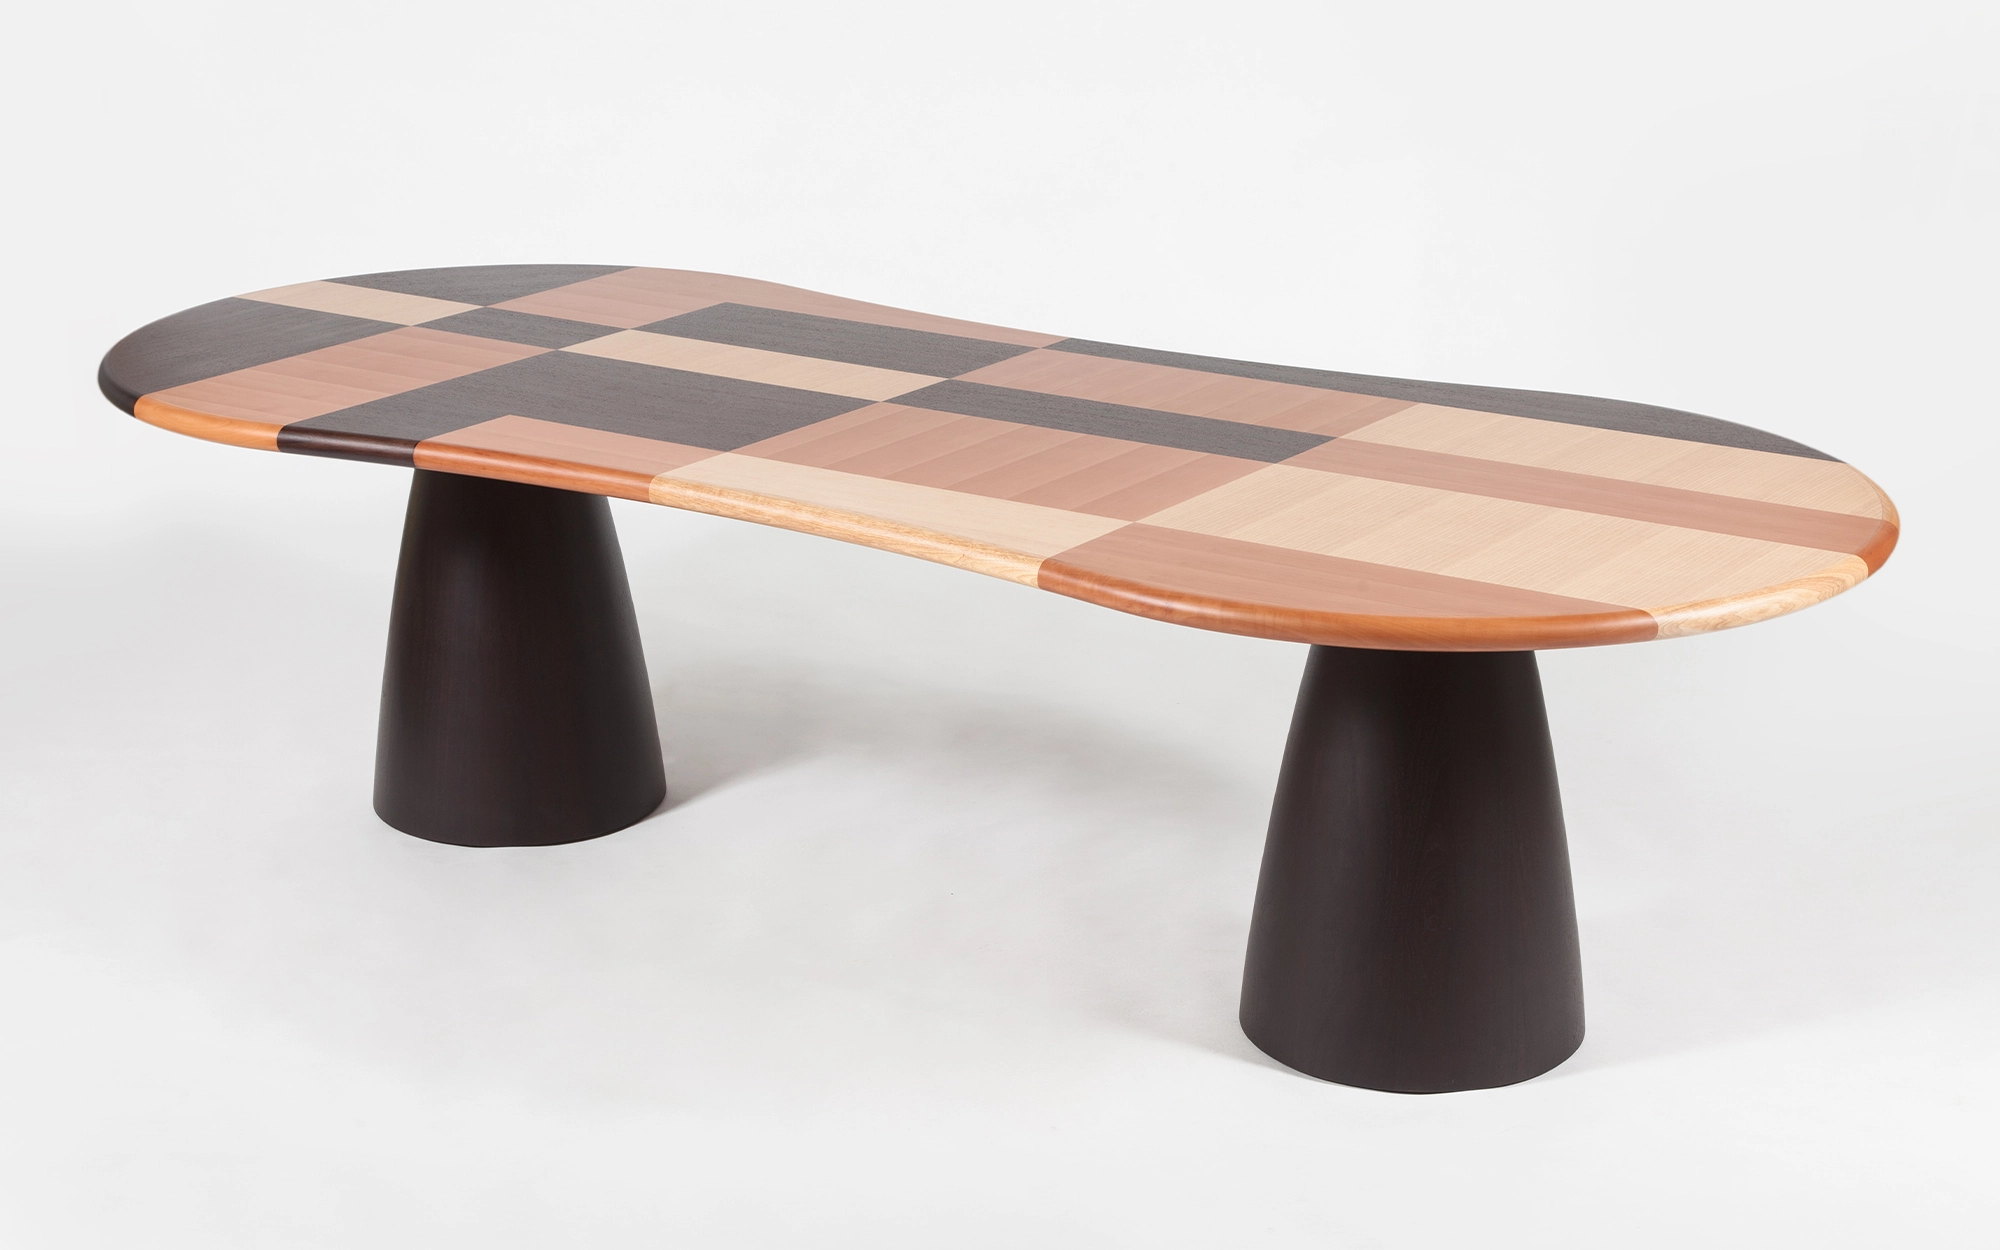 Firenze Table - Alessandro Mendini - Armchair - Galerie kreo